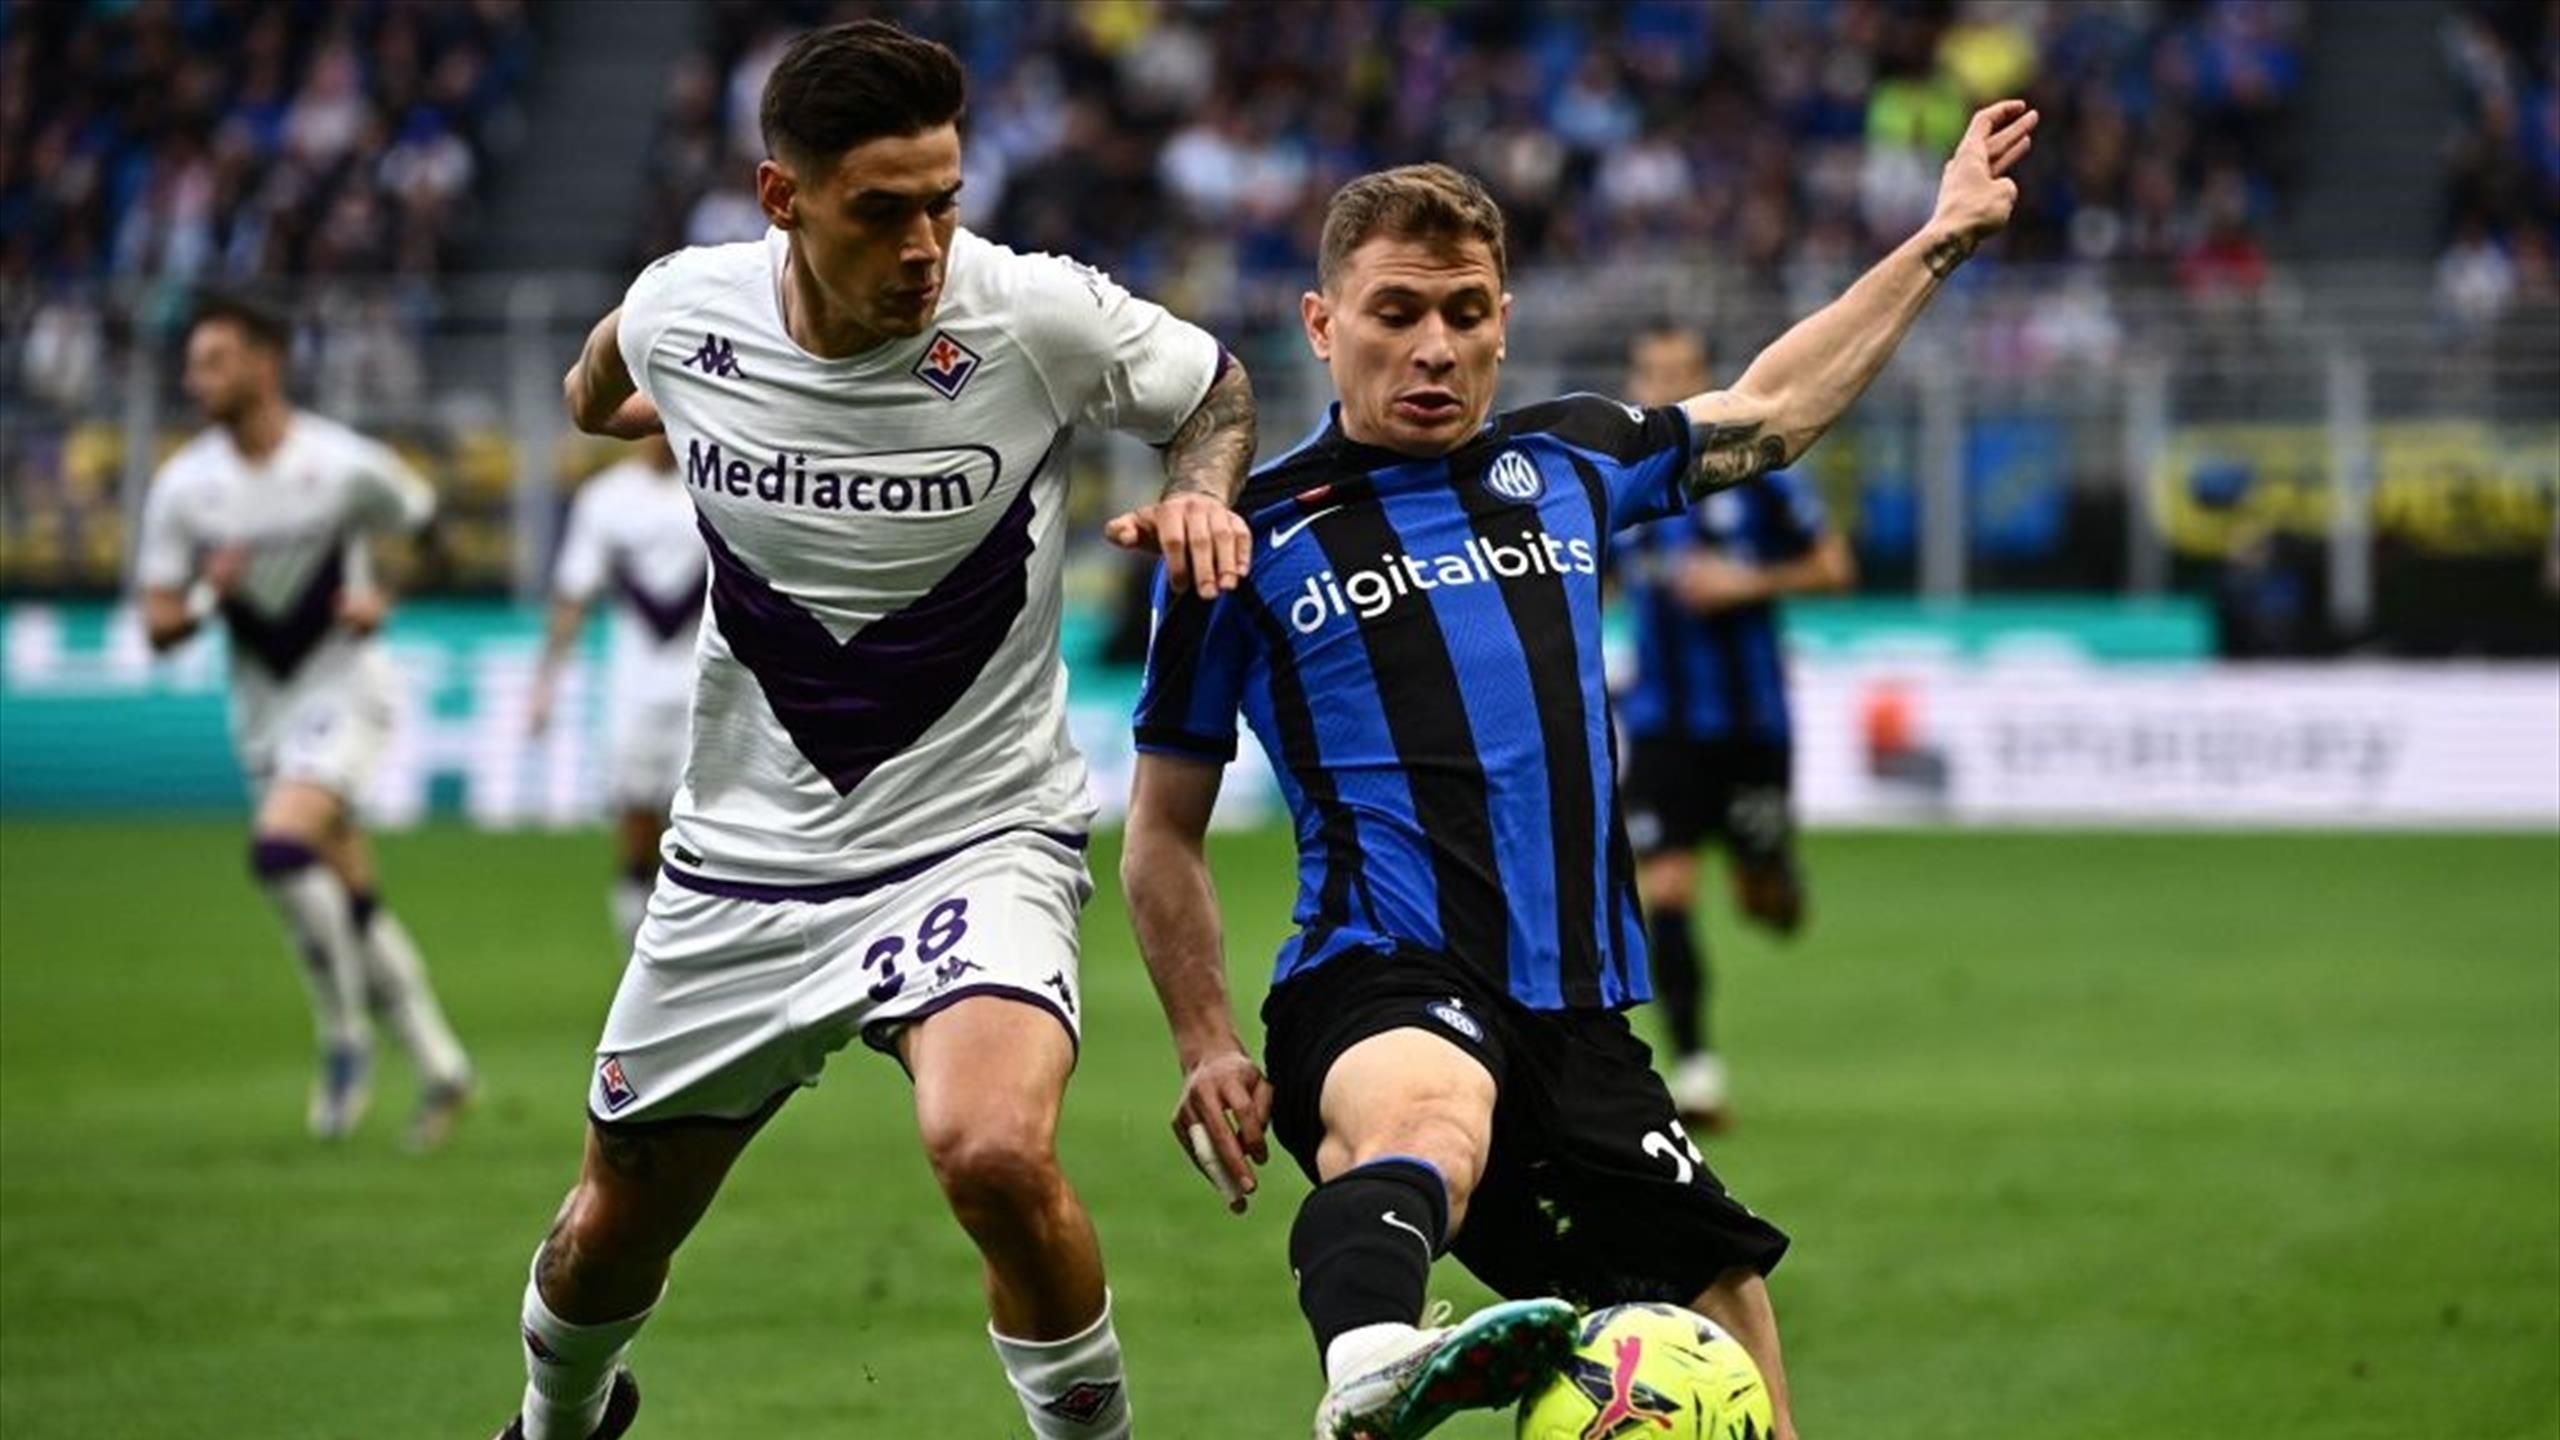 La finale di Coppa Italia sarà Inter-Fiorentina - Ticinonline